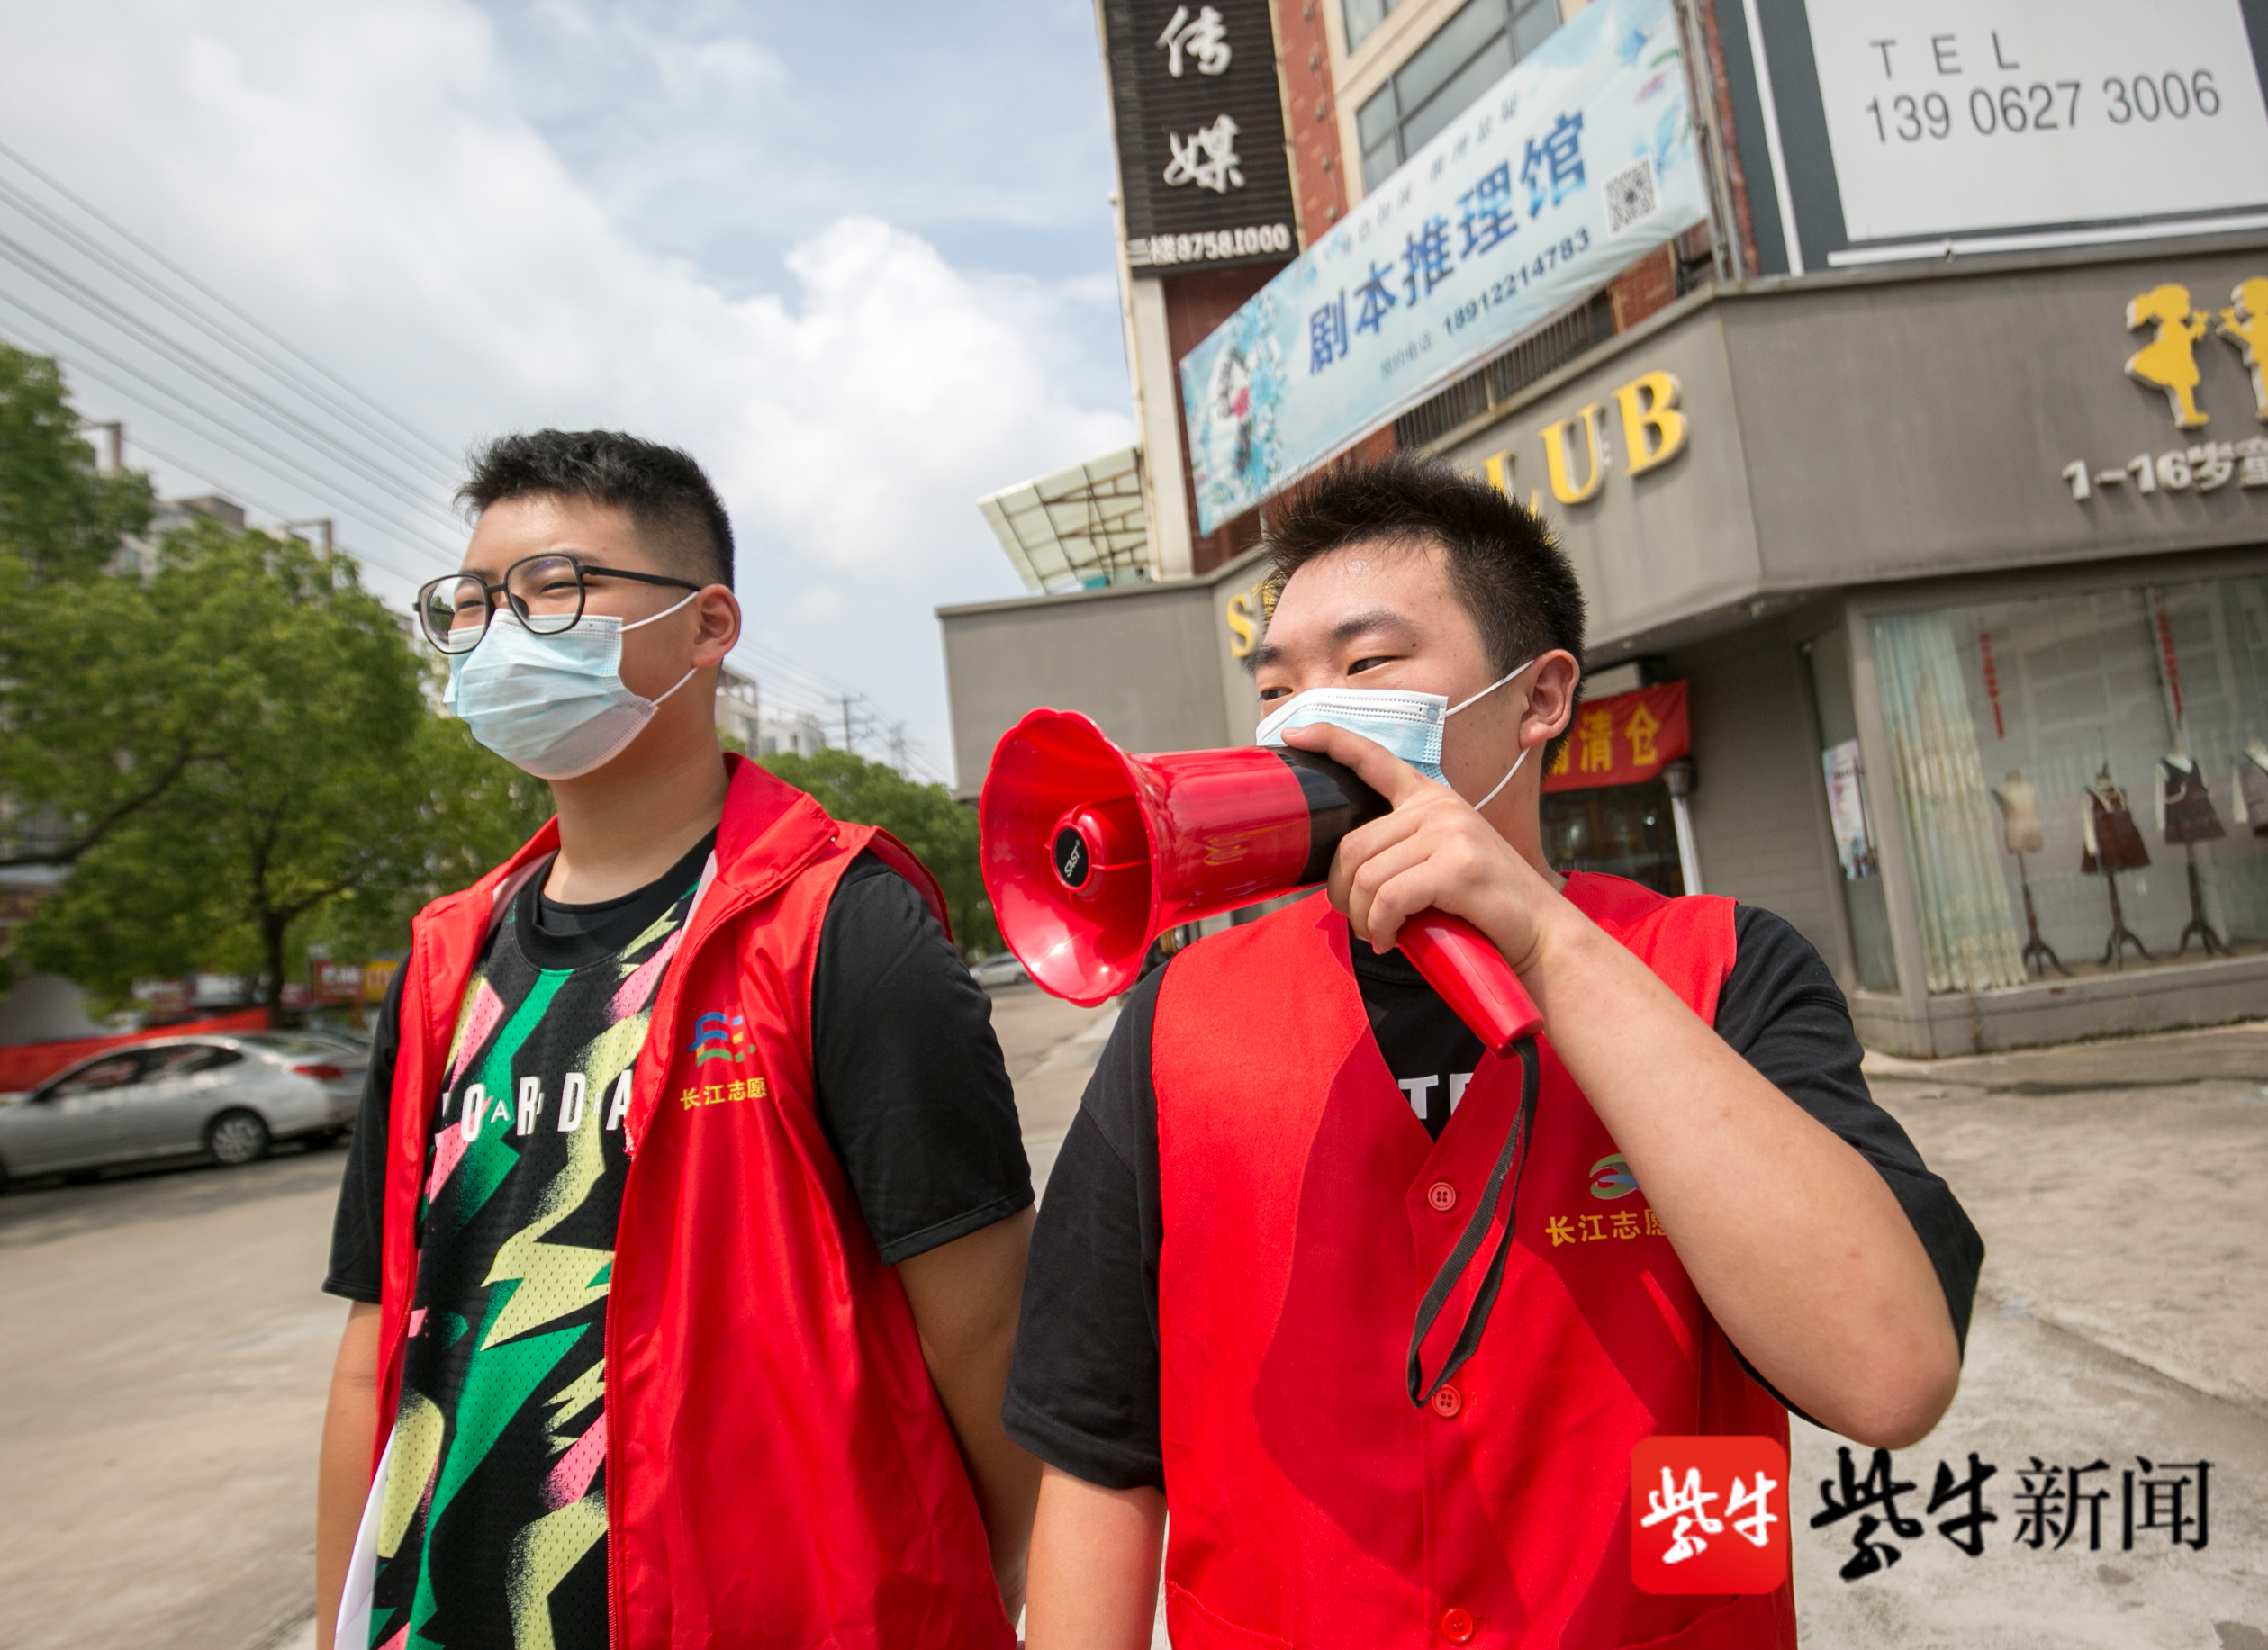 在江苏省如皋市长江镇海坝社区一疫情防控卡口,大学生志愿者正在对